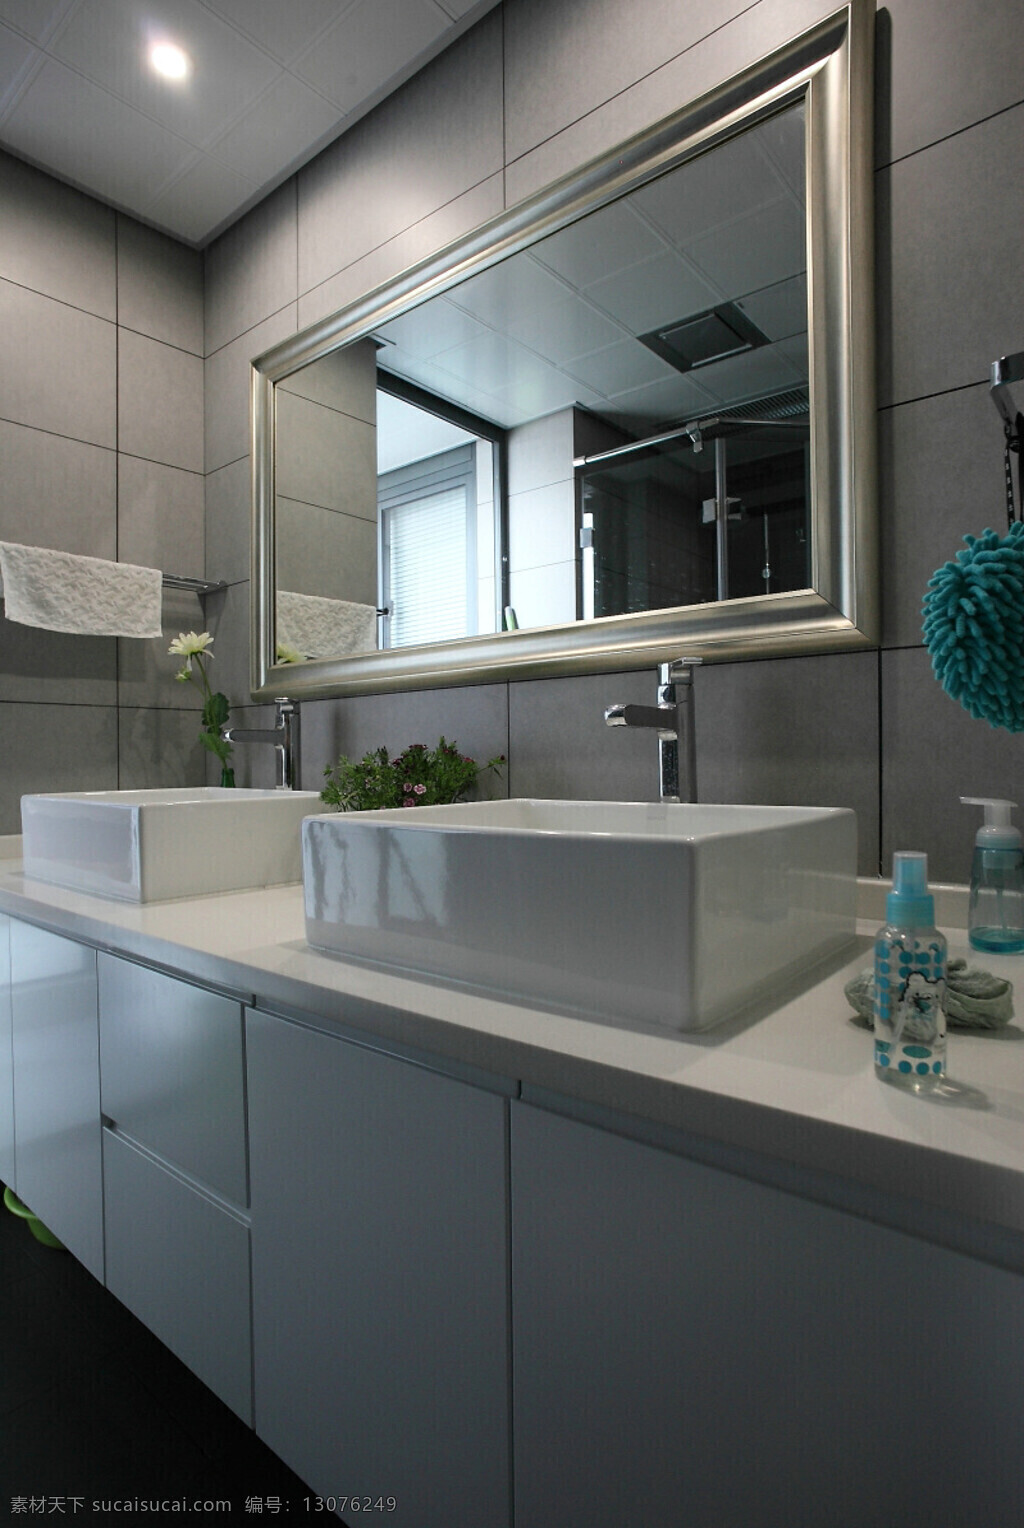 现代 浴室 浅 灰色 背景 墙 室内装修 效果图 浴室装修 白色桌面 浅色背景墙 方形洗手台